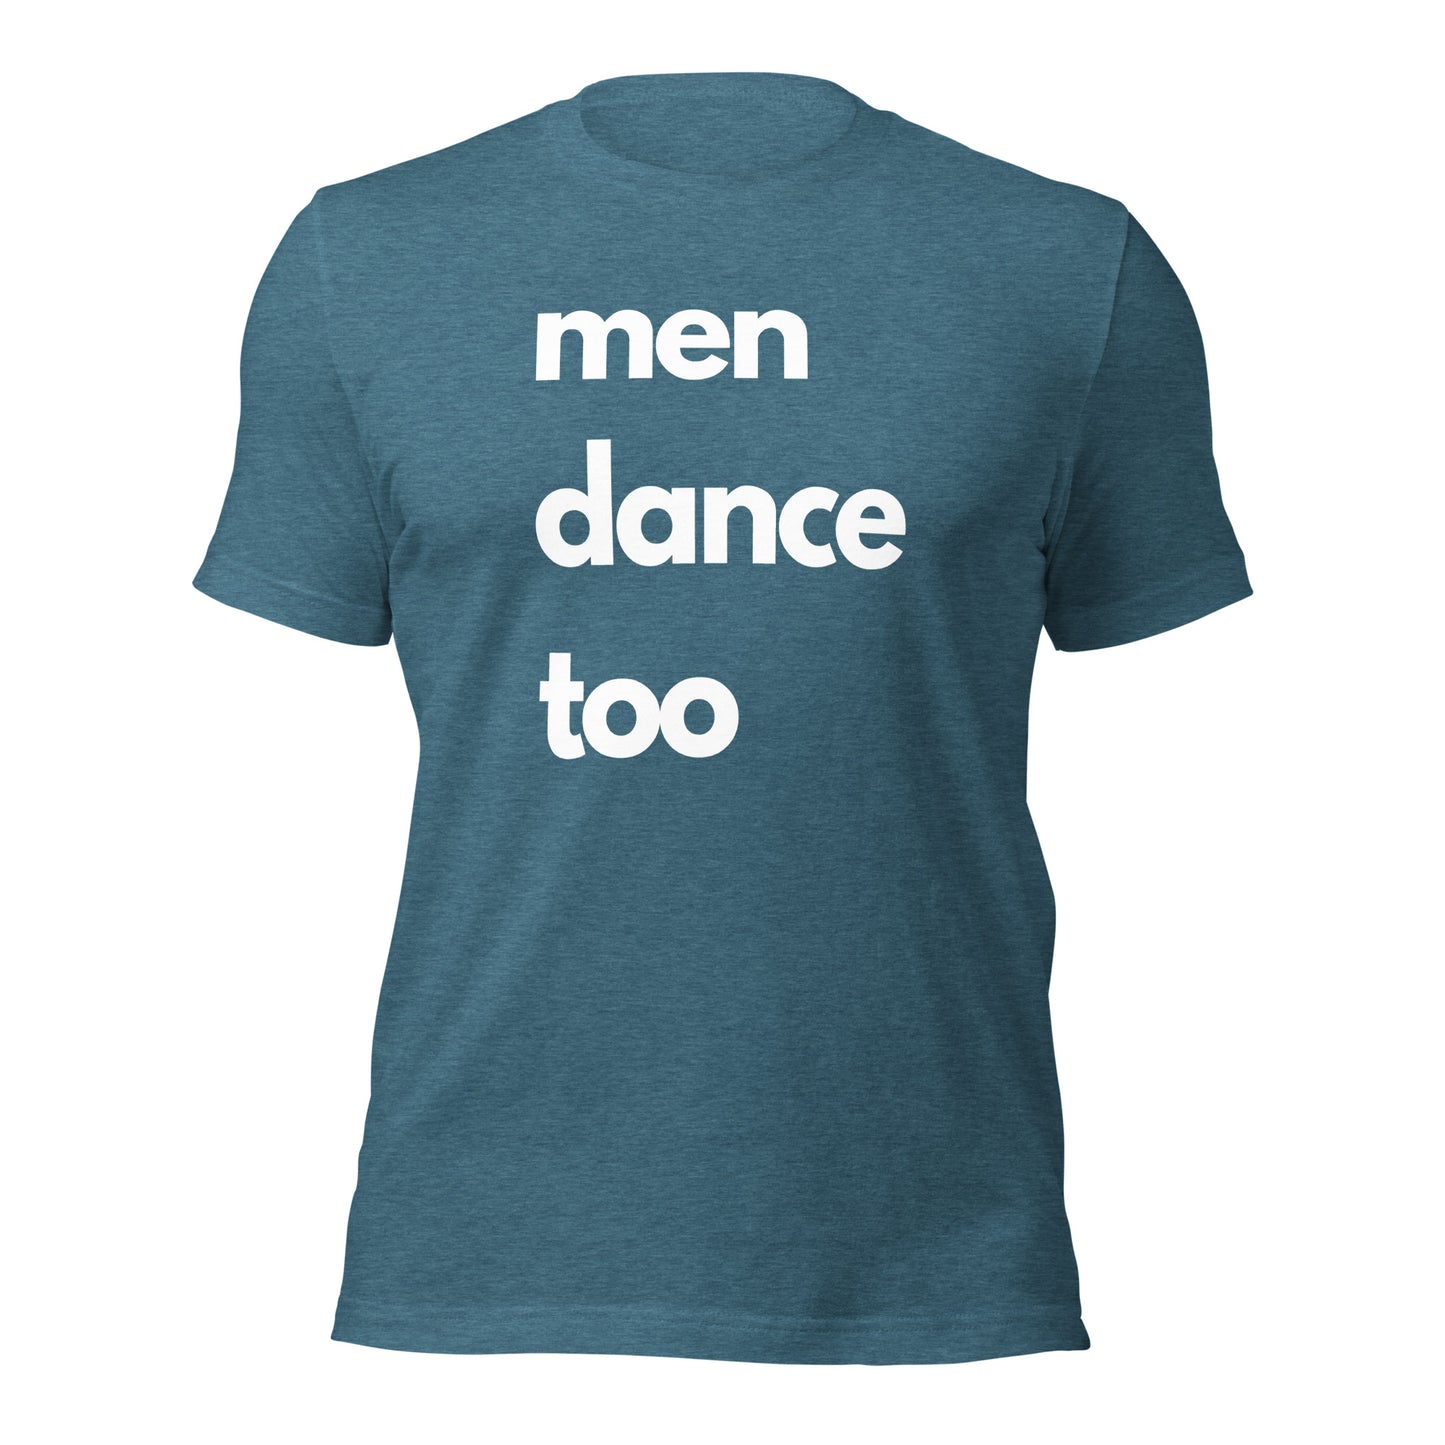 "men dance too" unisex white lettered t-shirt